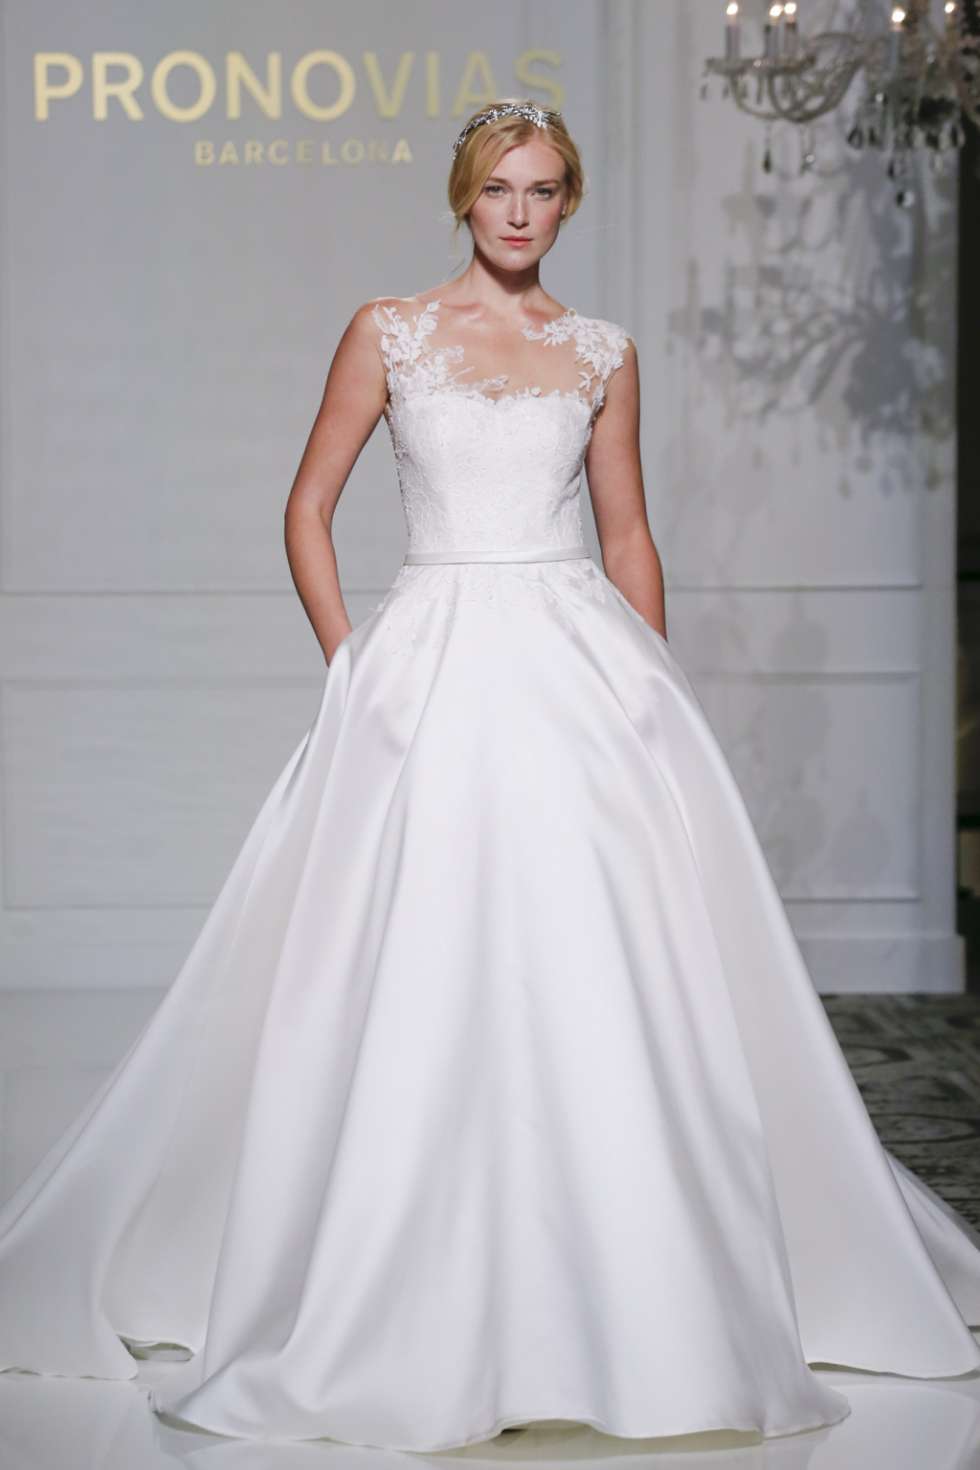 أسبوع نيويورك لأزياء الزفاف 2015: مجموعة برونوفياس لفساتين الزفاف لخريف 2016